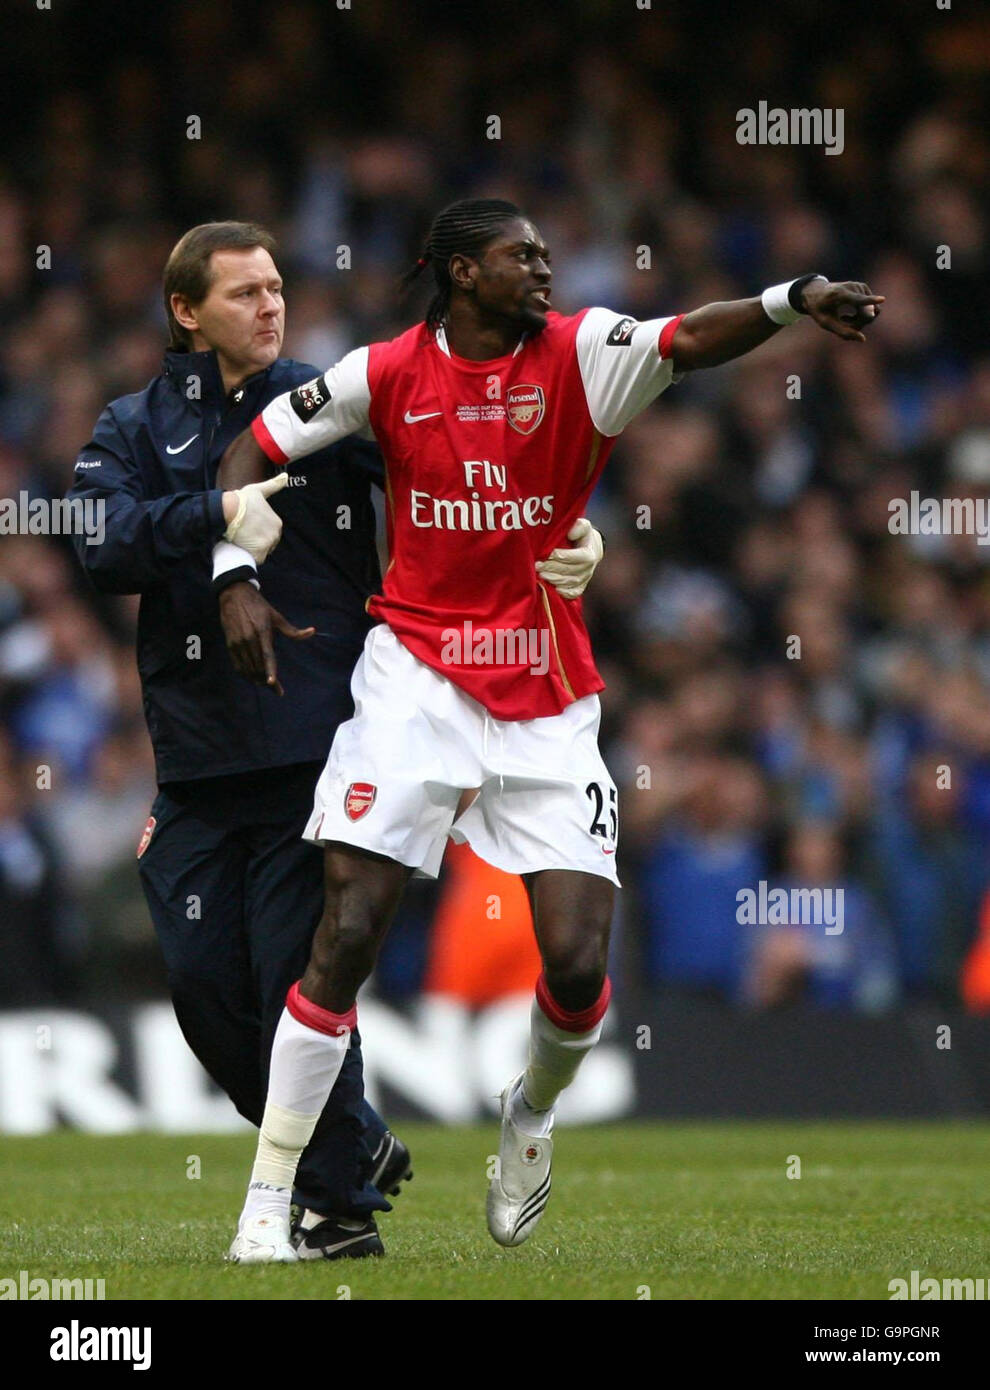 Emmanuel Adebayor von Arsenal muss zurückgehalten werden, nachdem er eine rote Karte gegen Chelsea erhalten hat, nachdem während des Carling Cup Finales im Millennium Stadium in Cardiff ein Kampf zwischen Spielern ausbrach. Stockfoto